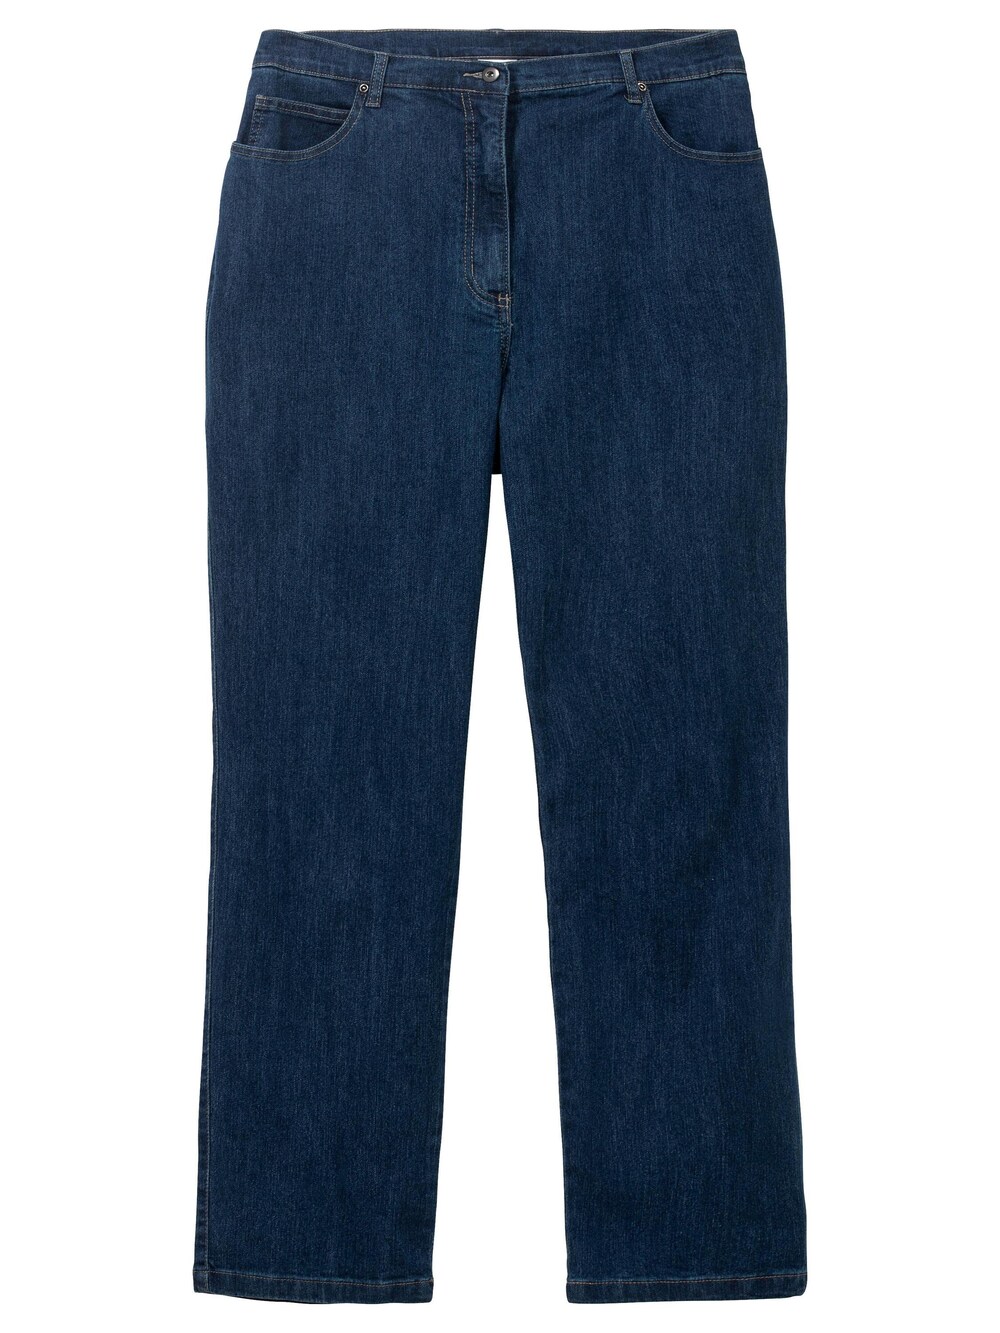 Обычные джинсы Sheego, синий